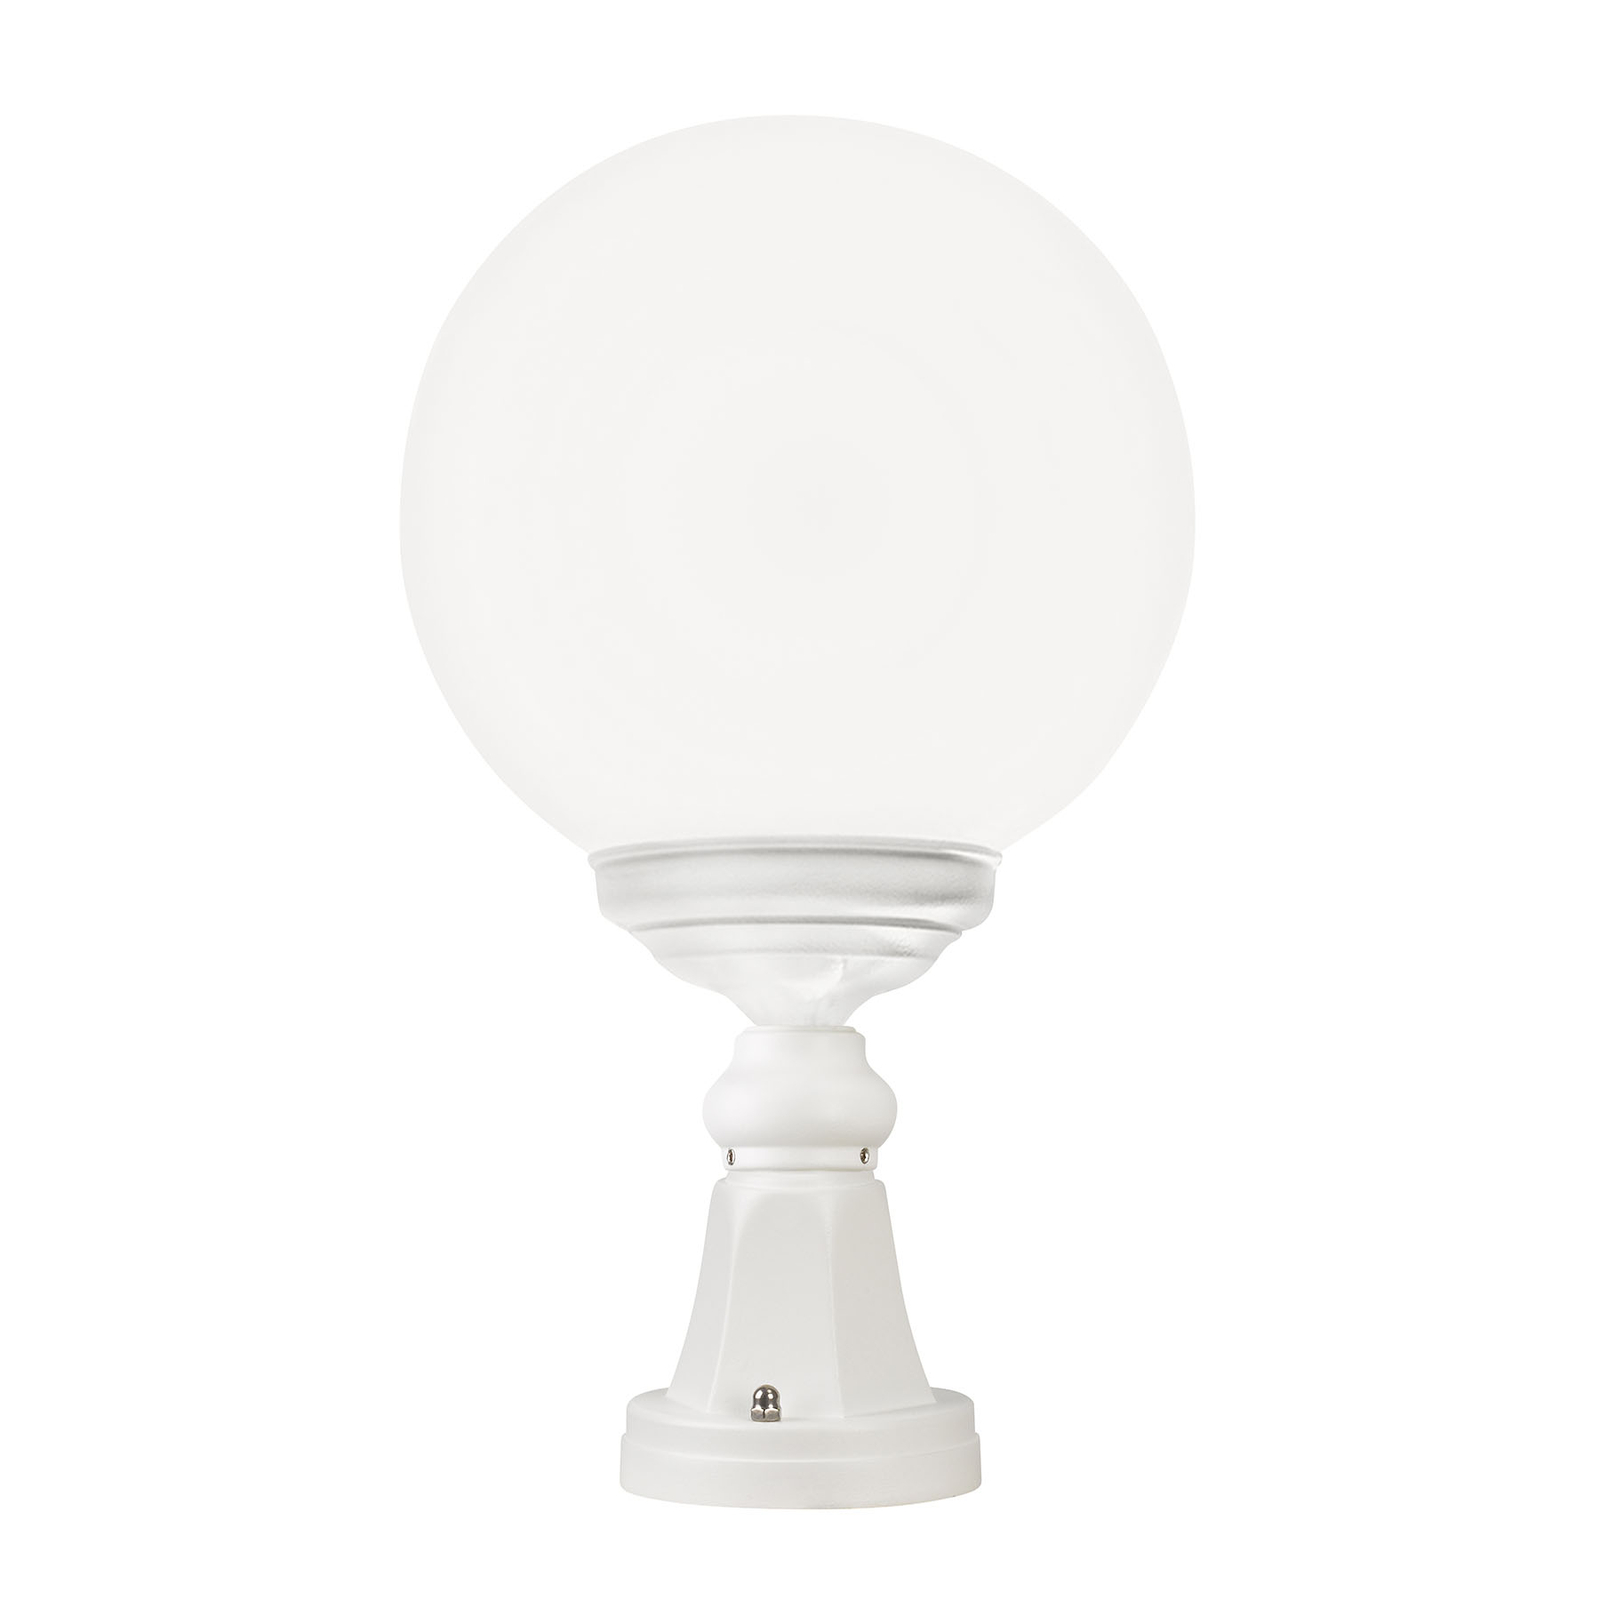 1131 pillar light, spherical lampshade, white